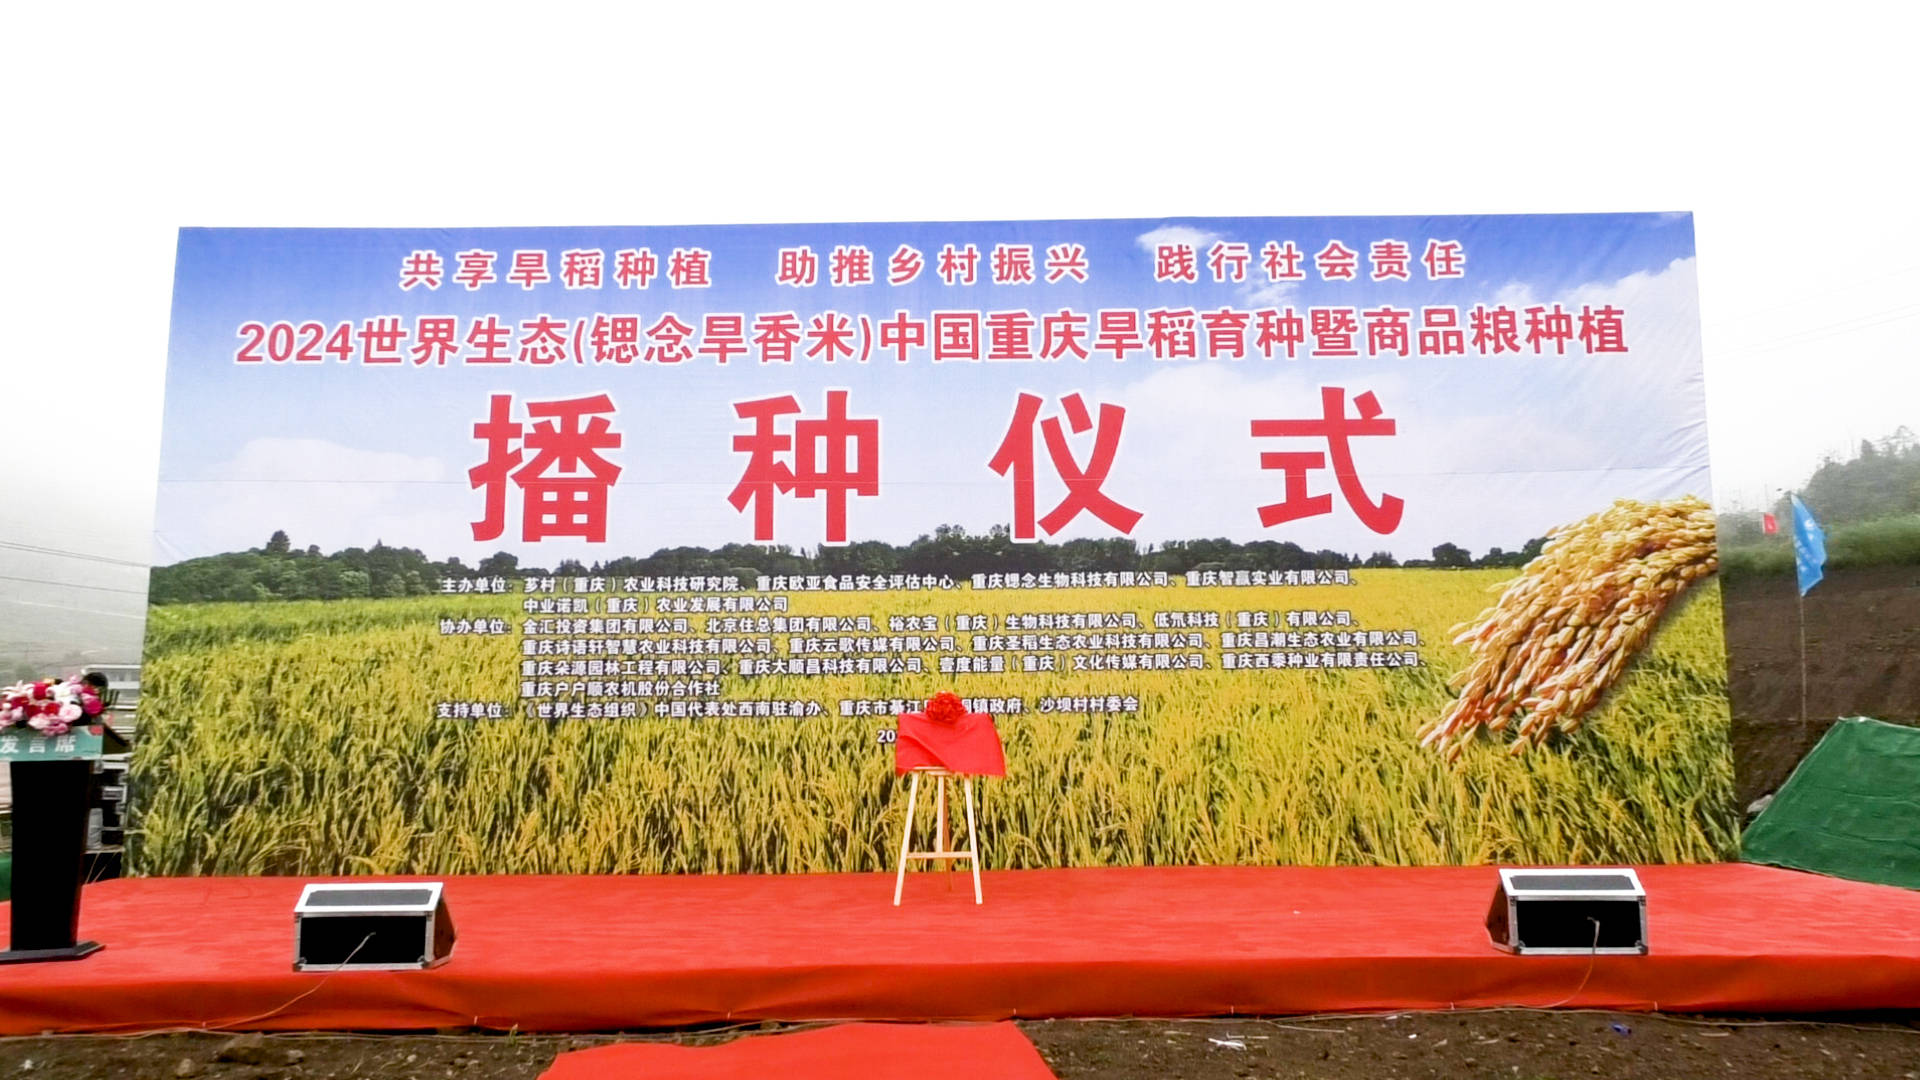 重庆旱稻育种暨商品粮种植播种仪式在万盛经开区举行,助力和美乡村